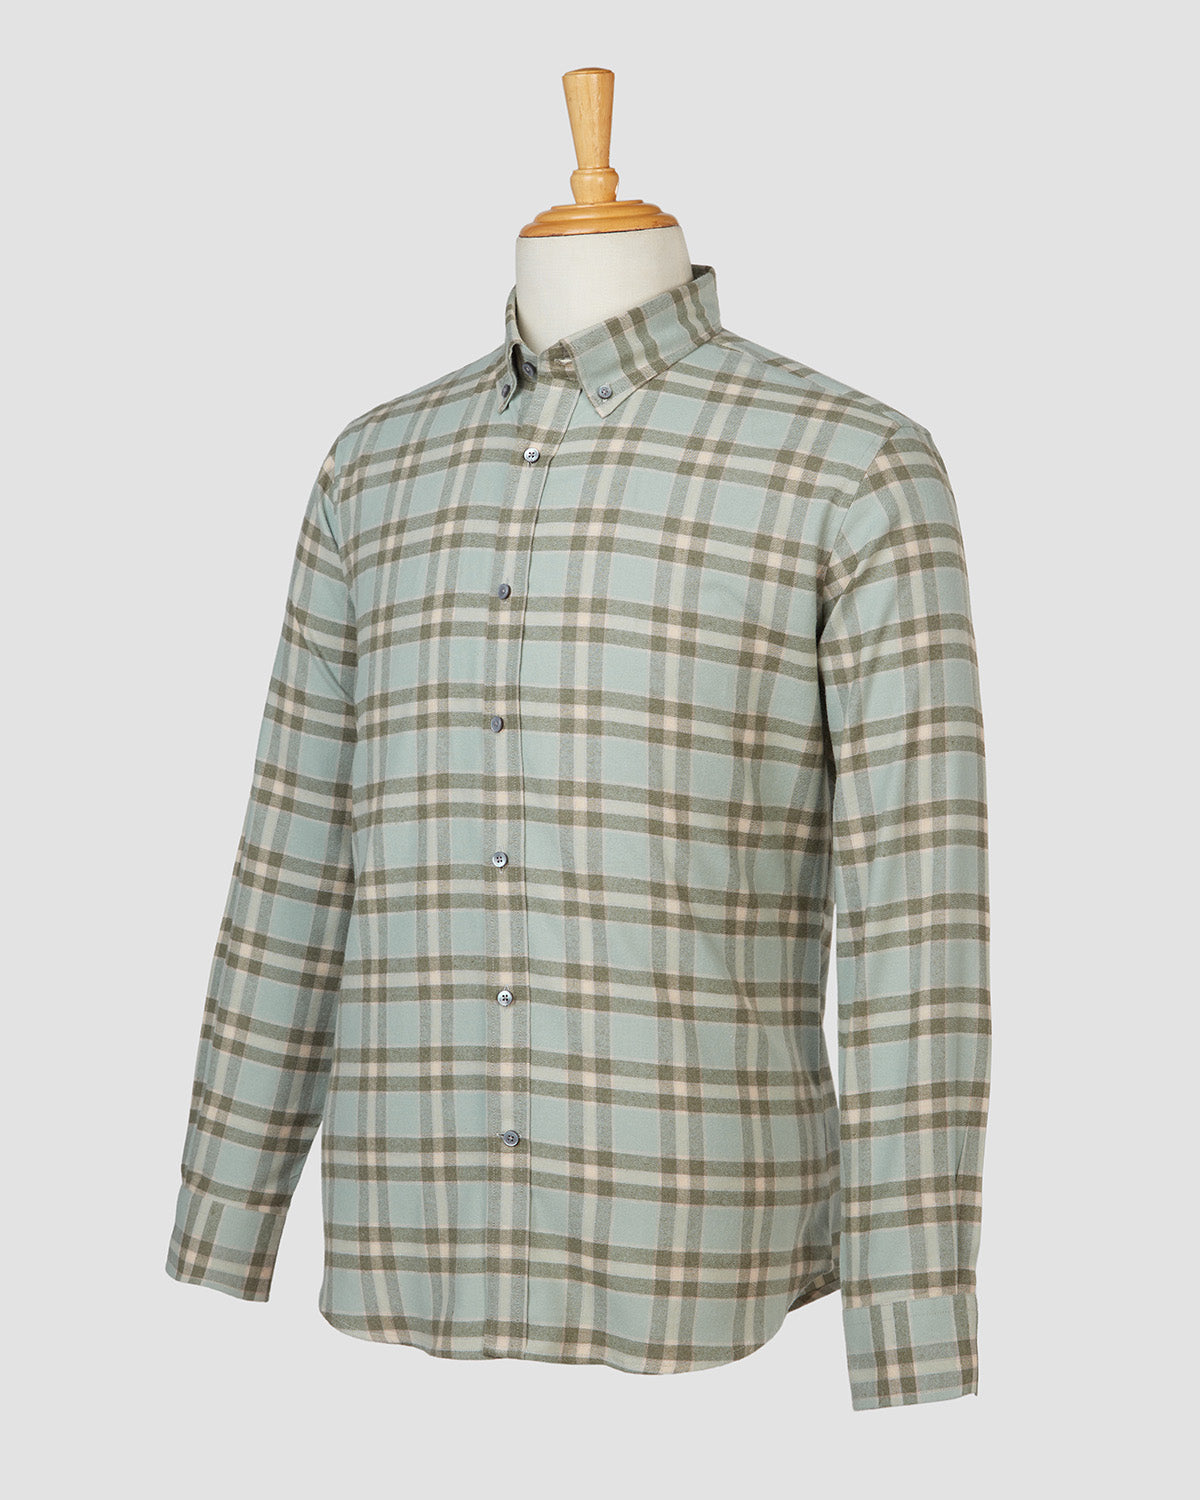 Bombay Shirt Company - Thomas Mason Verde Checked Shirt